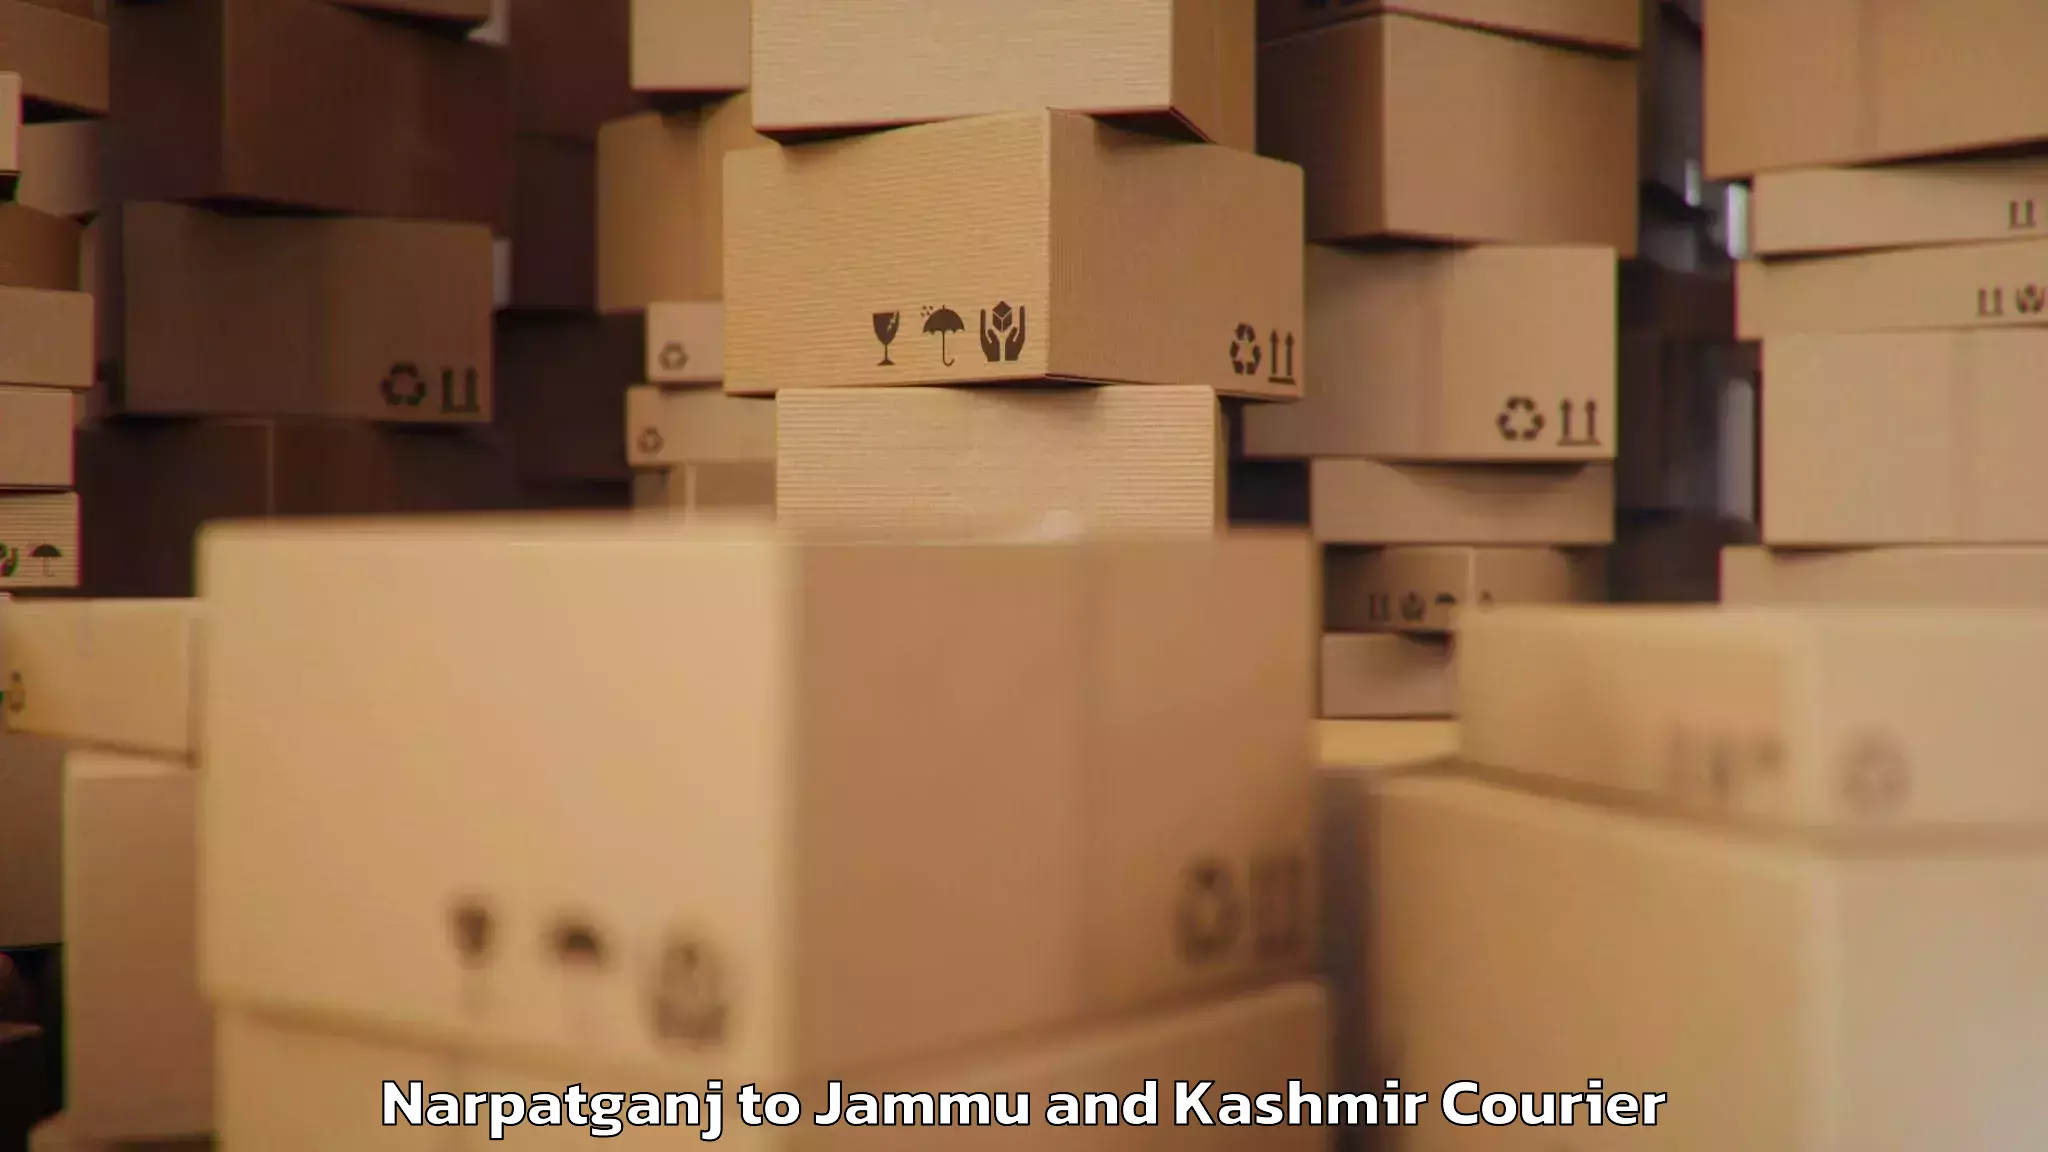 Luggage transport service Narpatganj to Jammu